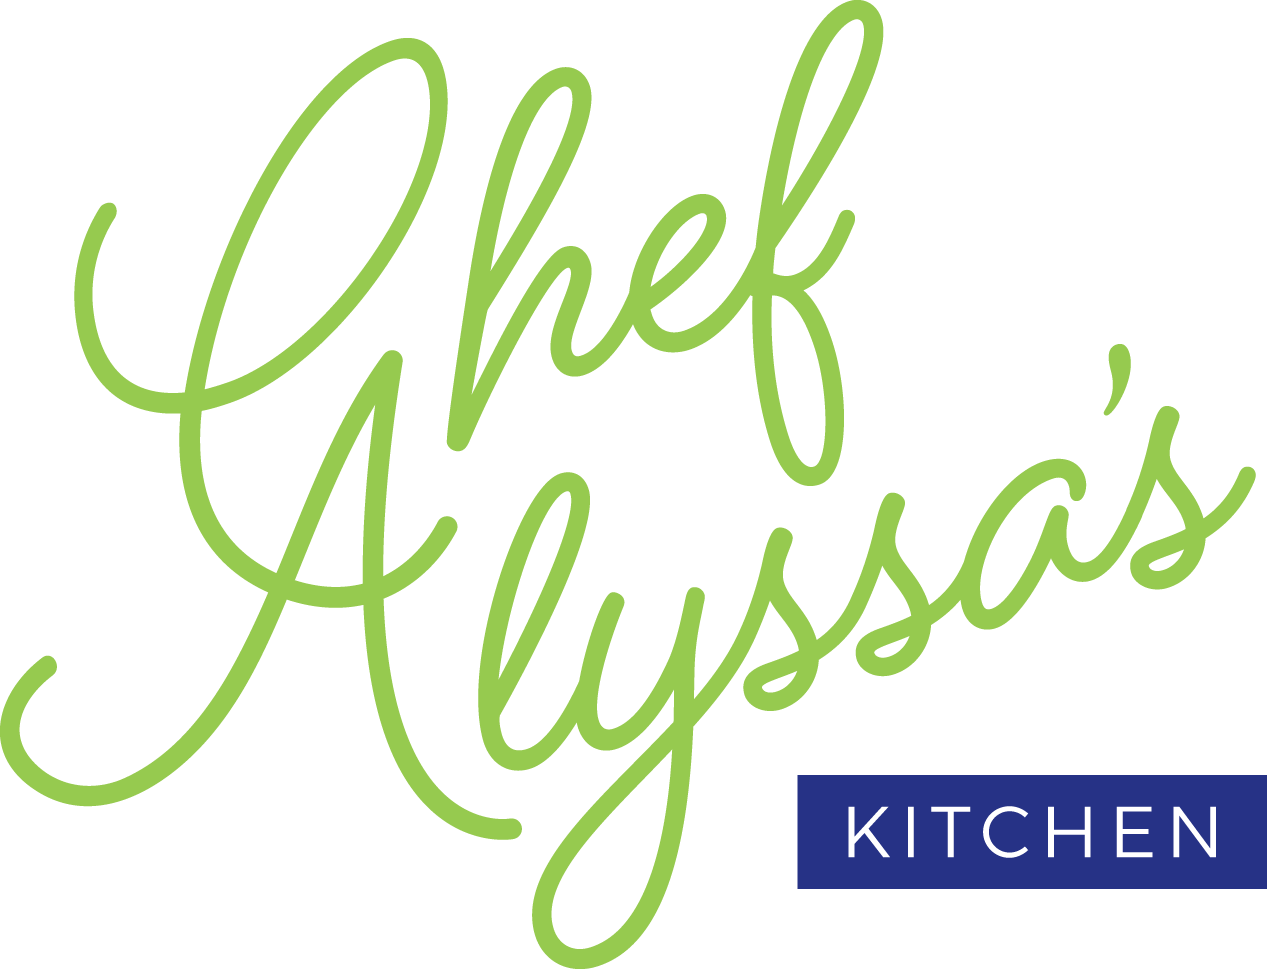 Chef Alyssa’s Kitchen